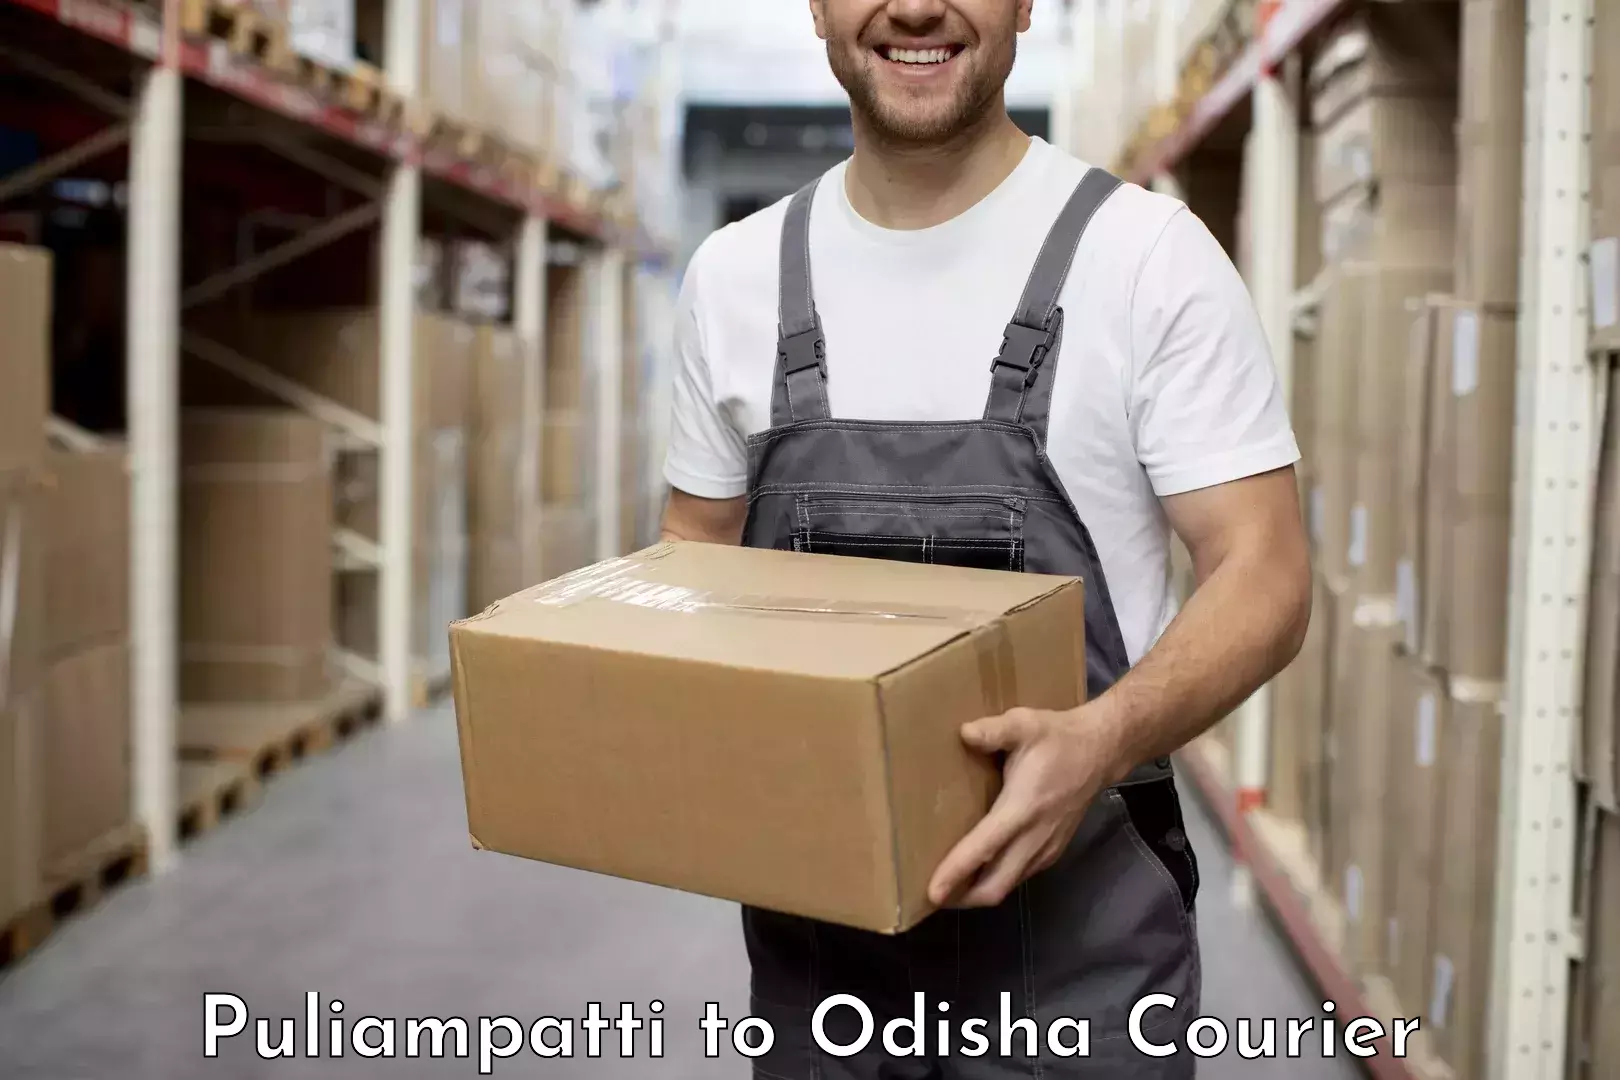 User-friendly courier app Puliampatti to Odisha